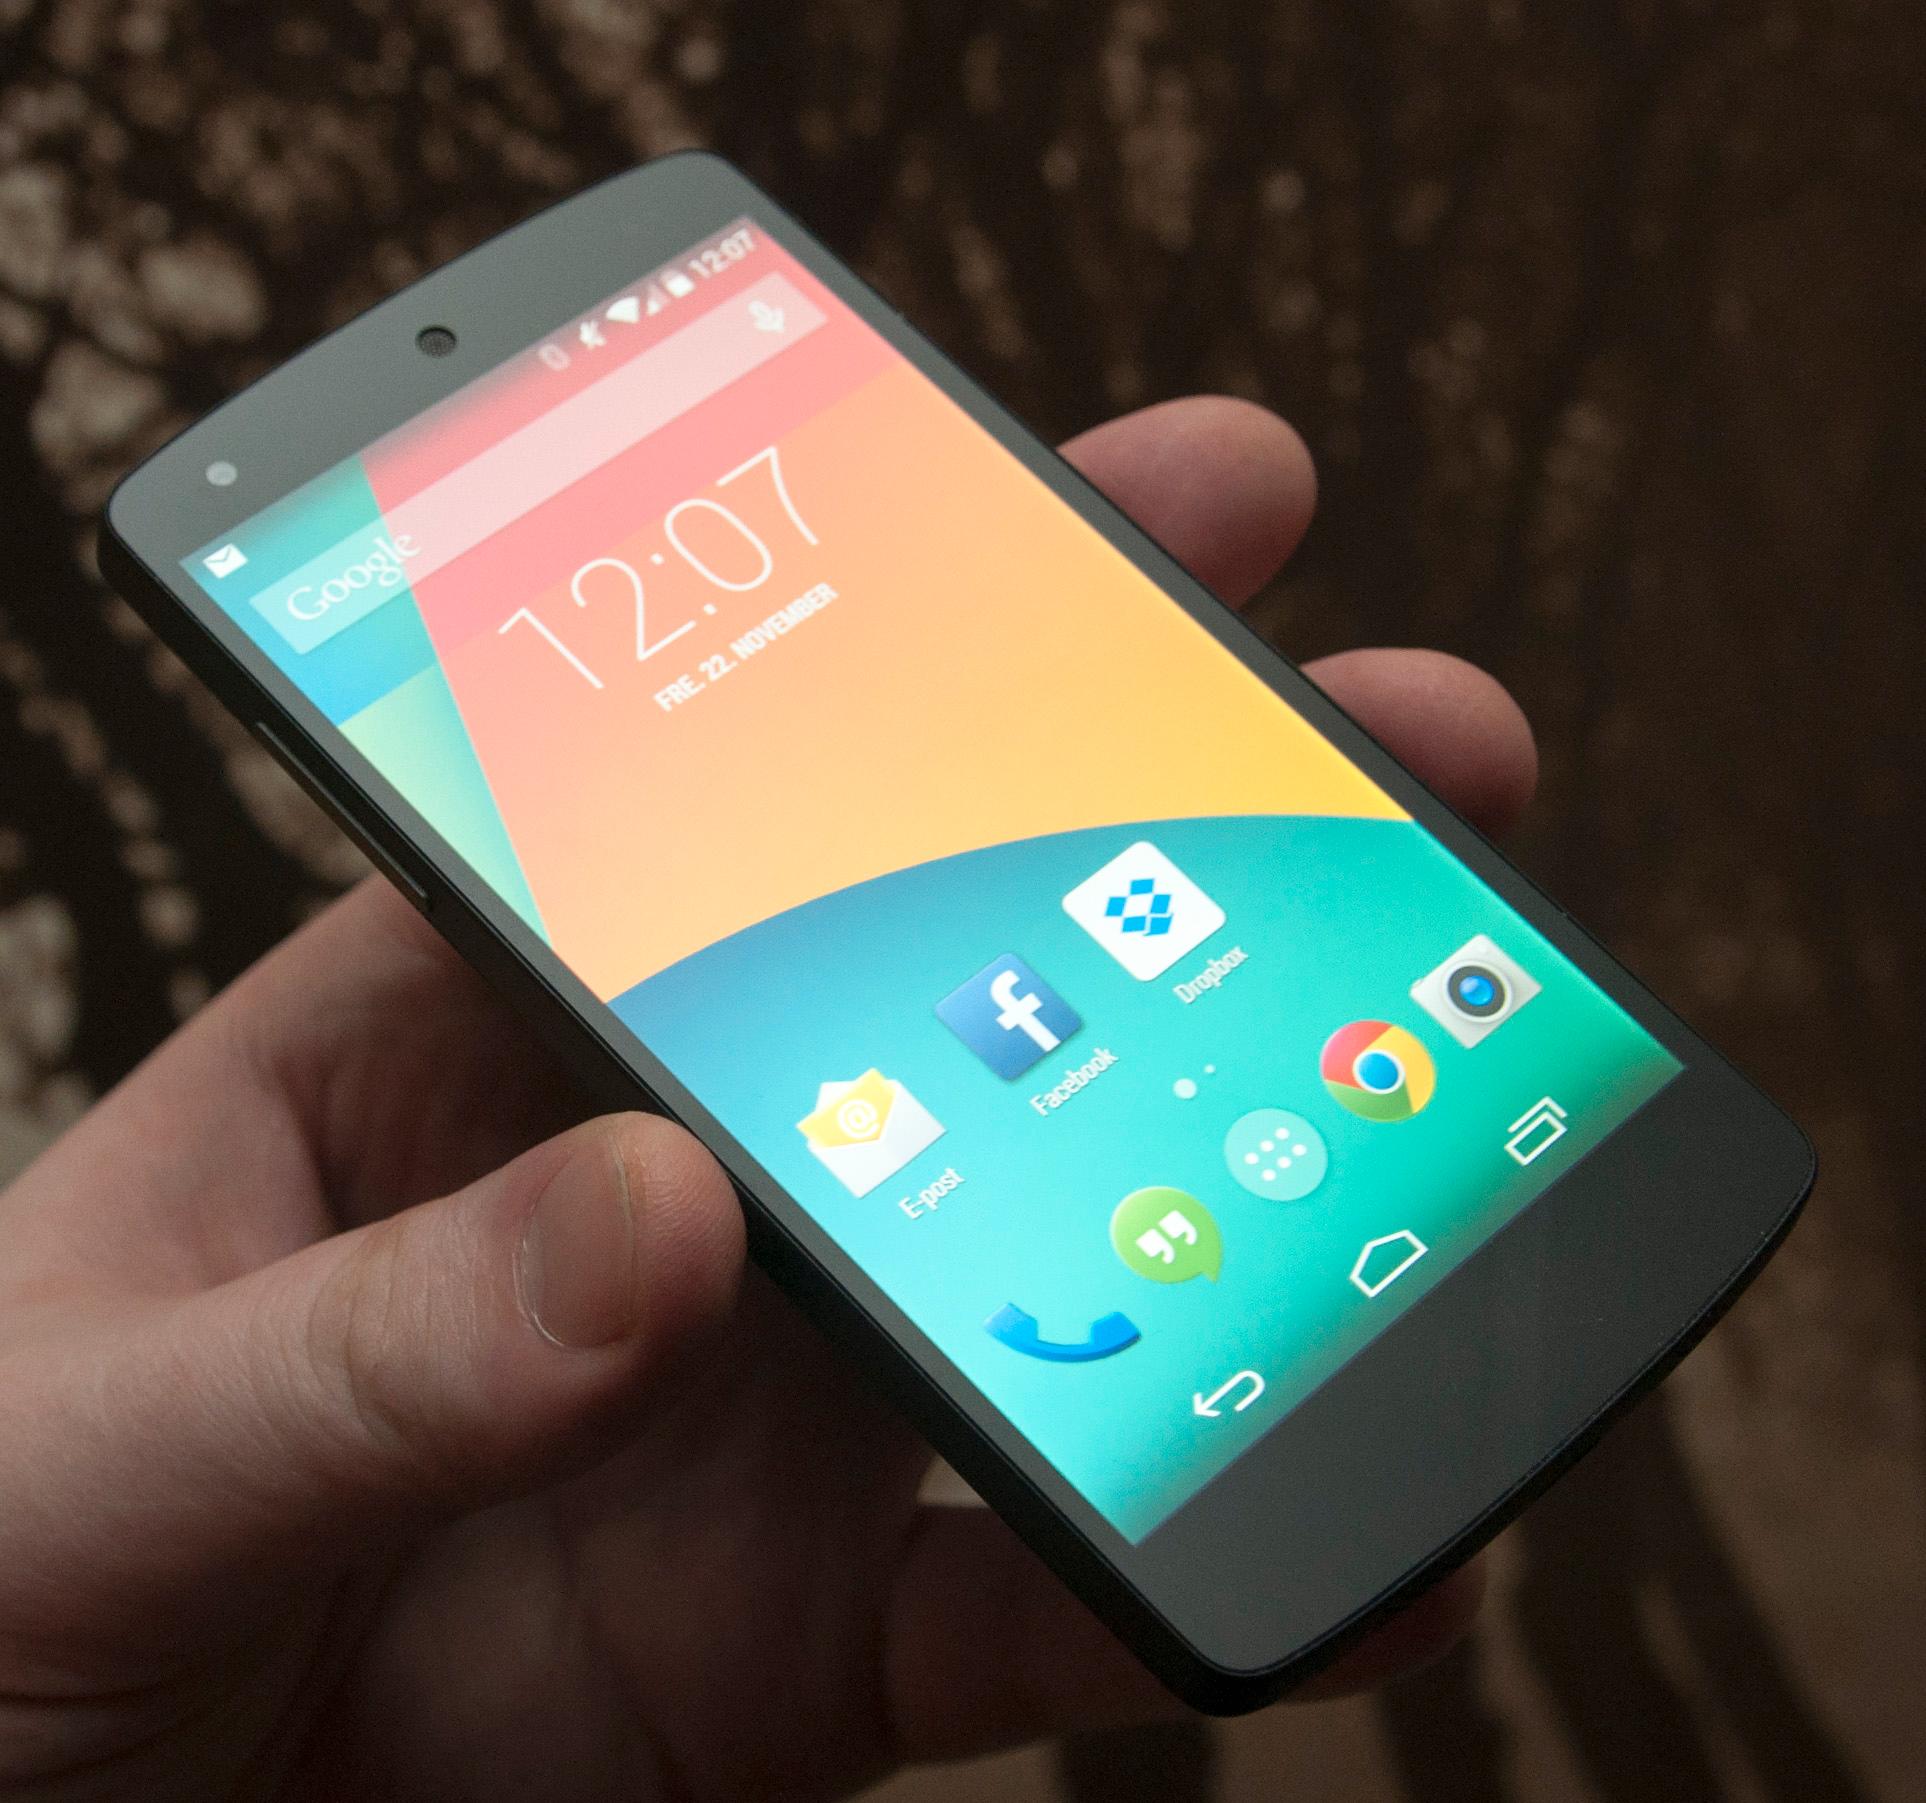 LG Samarbeider allerede med Google om Nexus 5.Foto: Finn Jarle Kvalheim, Amobil.no